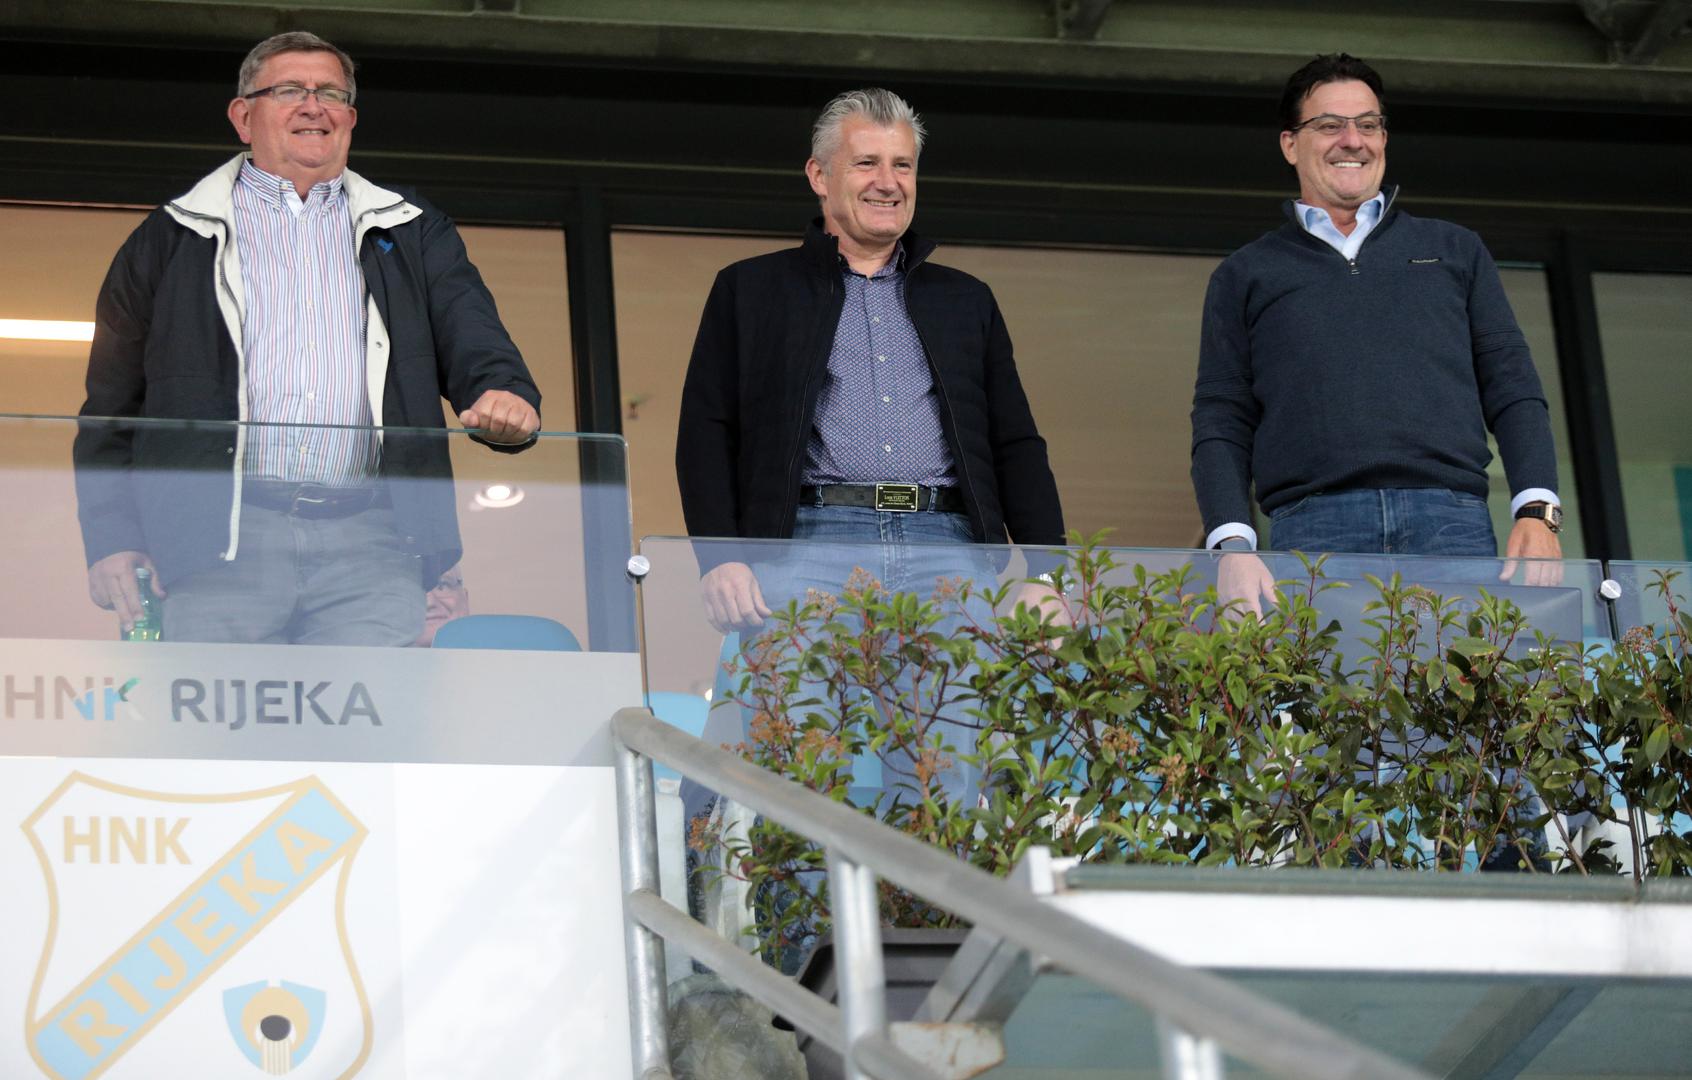 Utakmicu su iz lože mogli pratiti tek malobrojni, a tu su bili predsjednik HNS-a Davor Šuker, predsjednik Rijeke Damir Mišković i gradonačelnik Rijeke Vojko Obersnel.